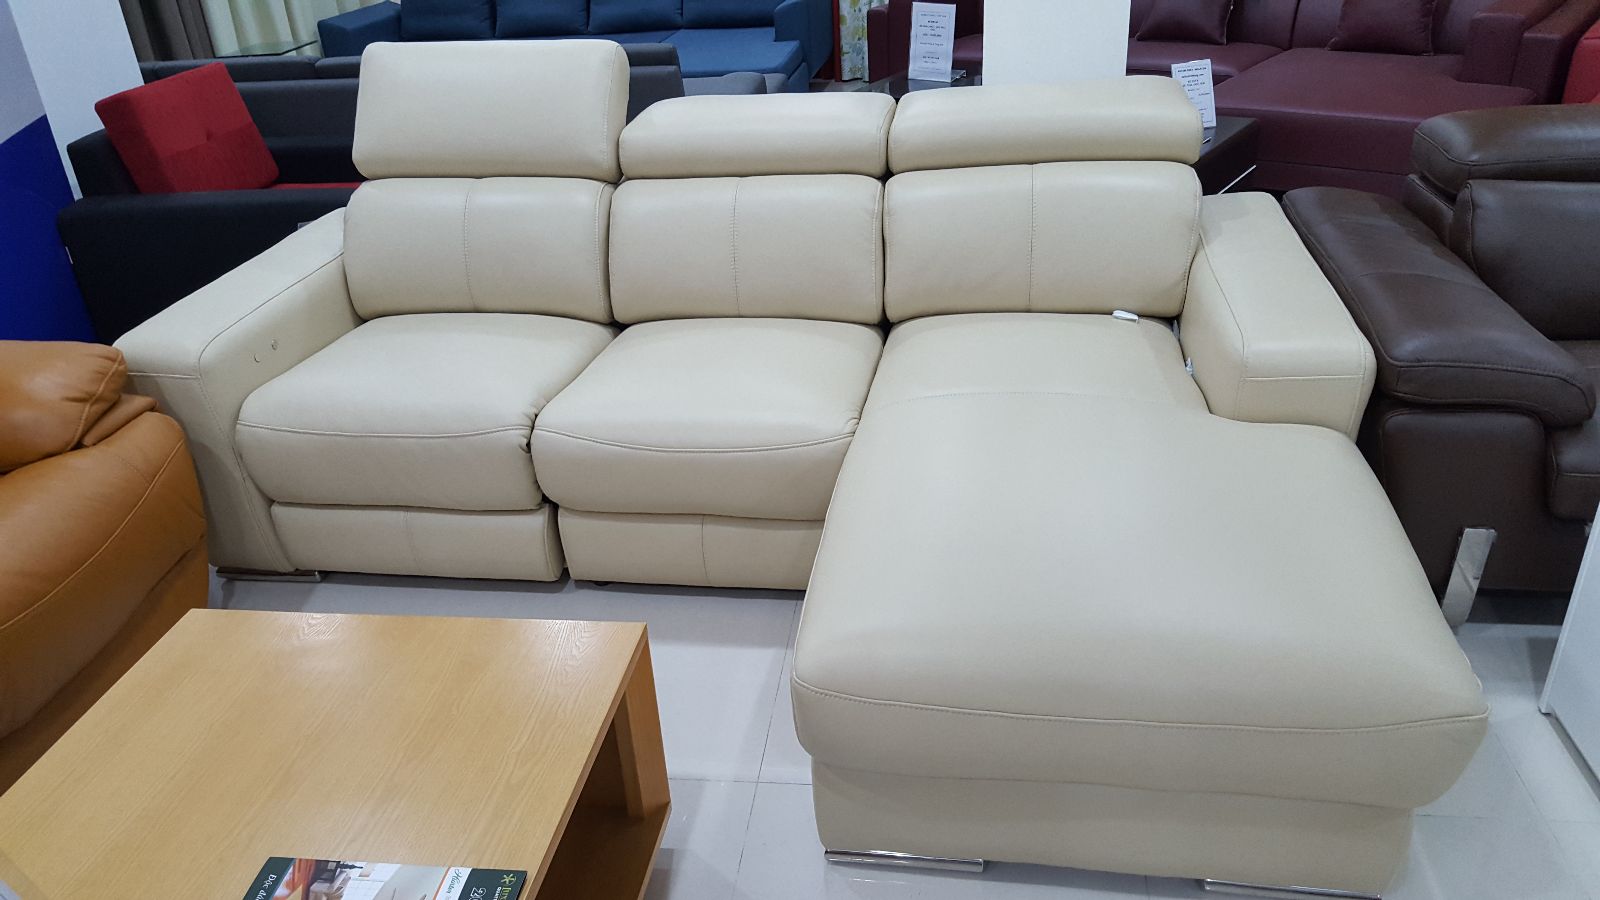 15+ mẫu sofa nhập khẩu cho phòng khách đẹp hút hồn - Ảnh 3